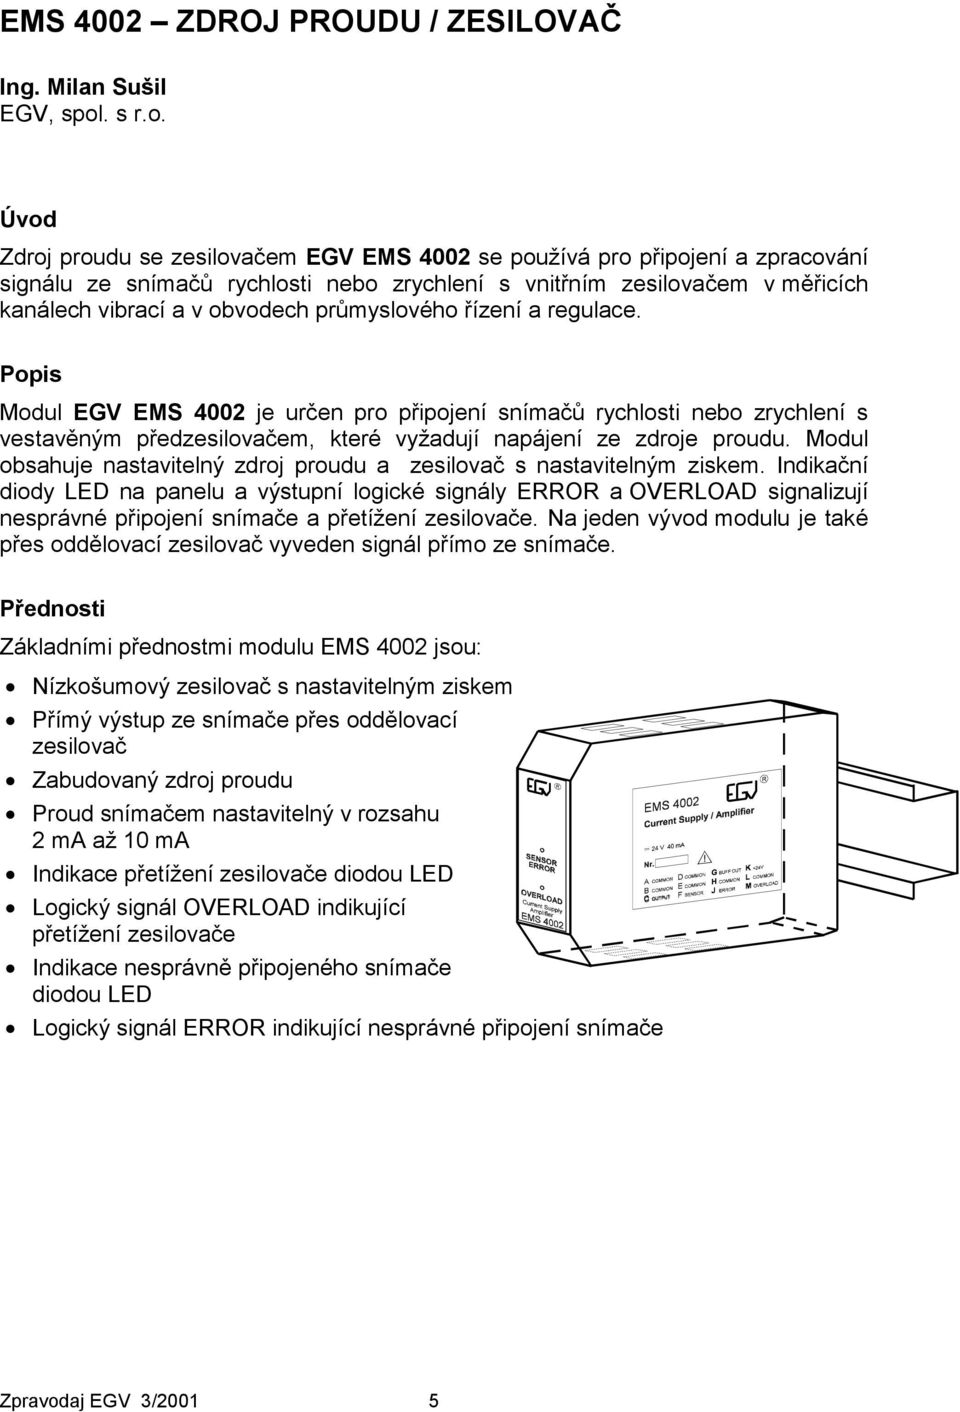 Úvod Zdroj proudu se zesilovačem EGV EMS 4002 se používá pro připojení a zpracování signálu ze snímačů rychlosti nebo zrychlení s vnitřním zesilovačem v měřicích kanálech vibrací a v obvodech